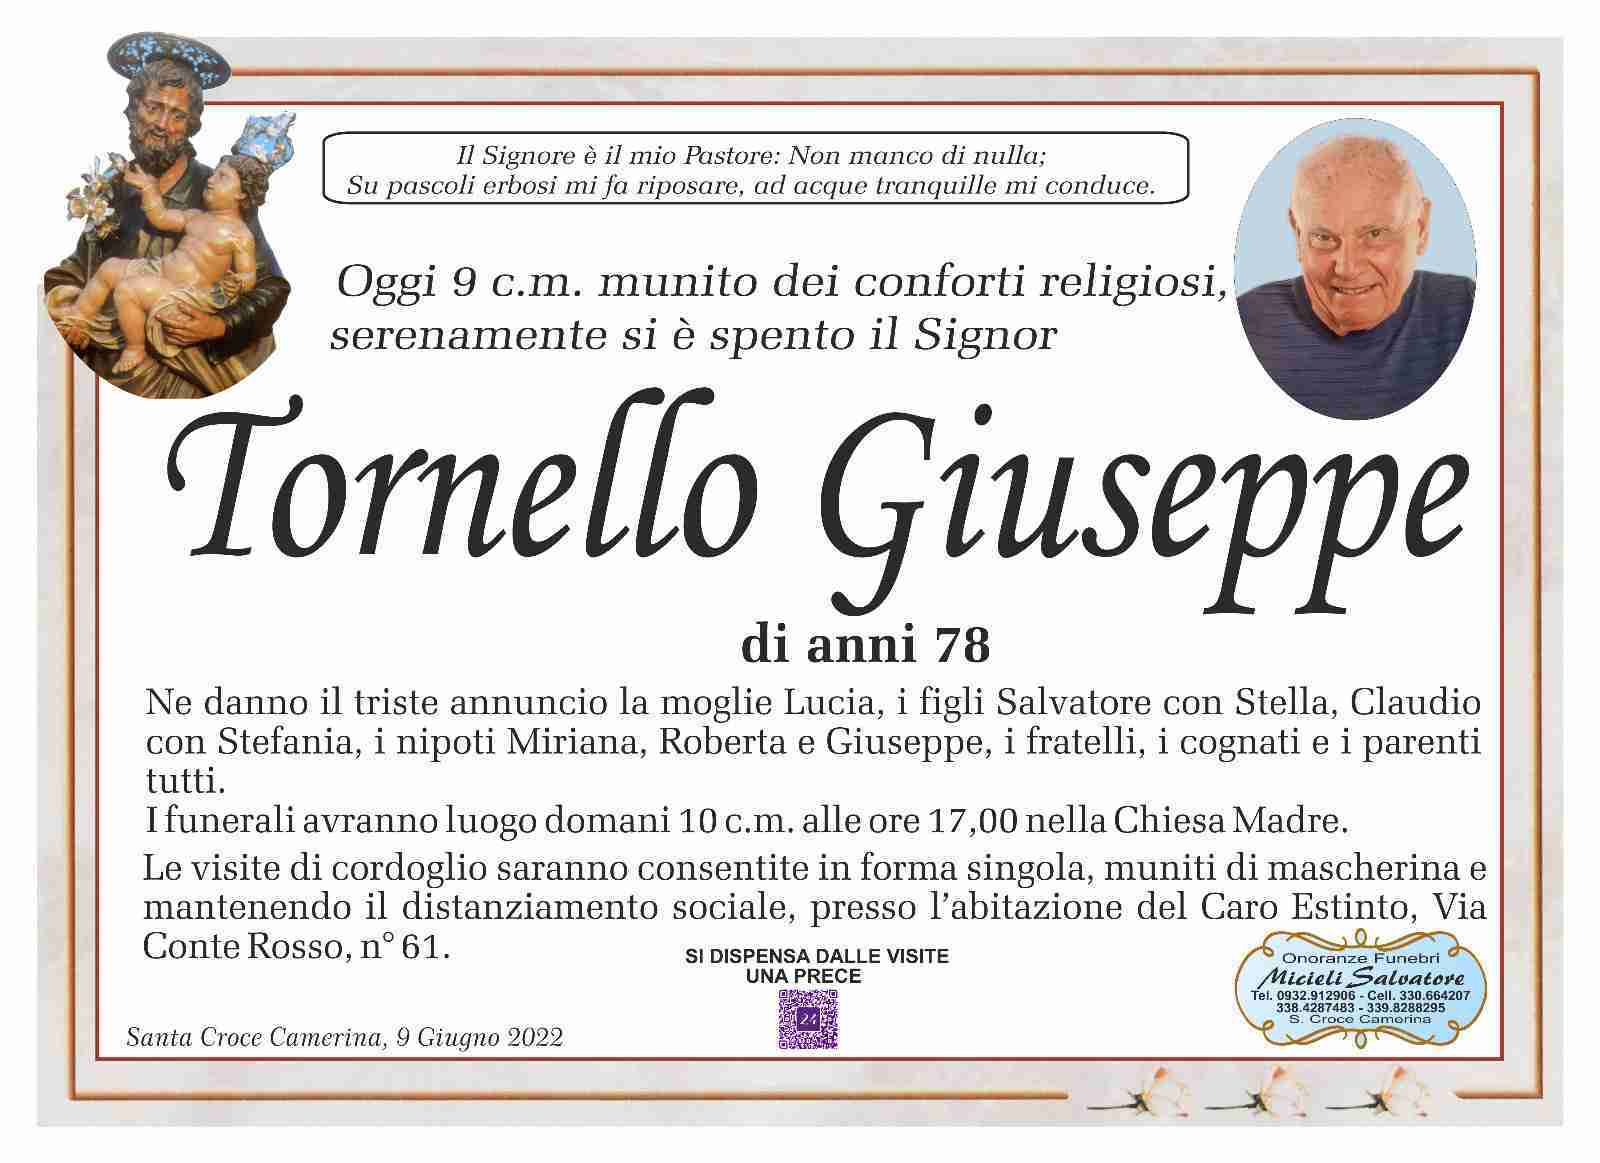 Giuseppe Tornello